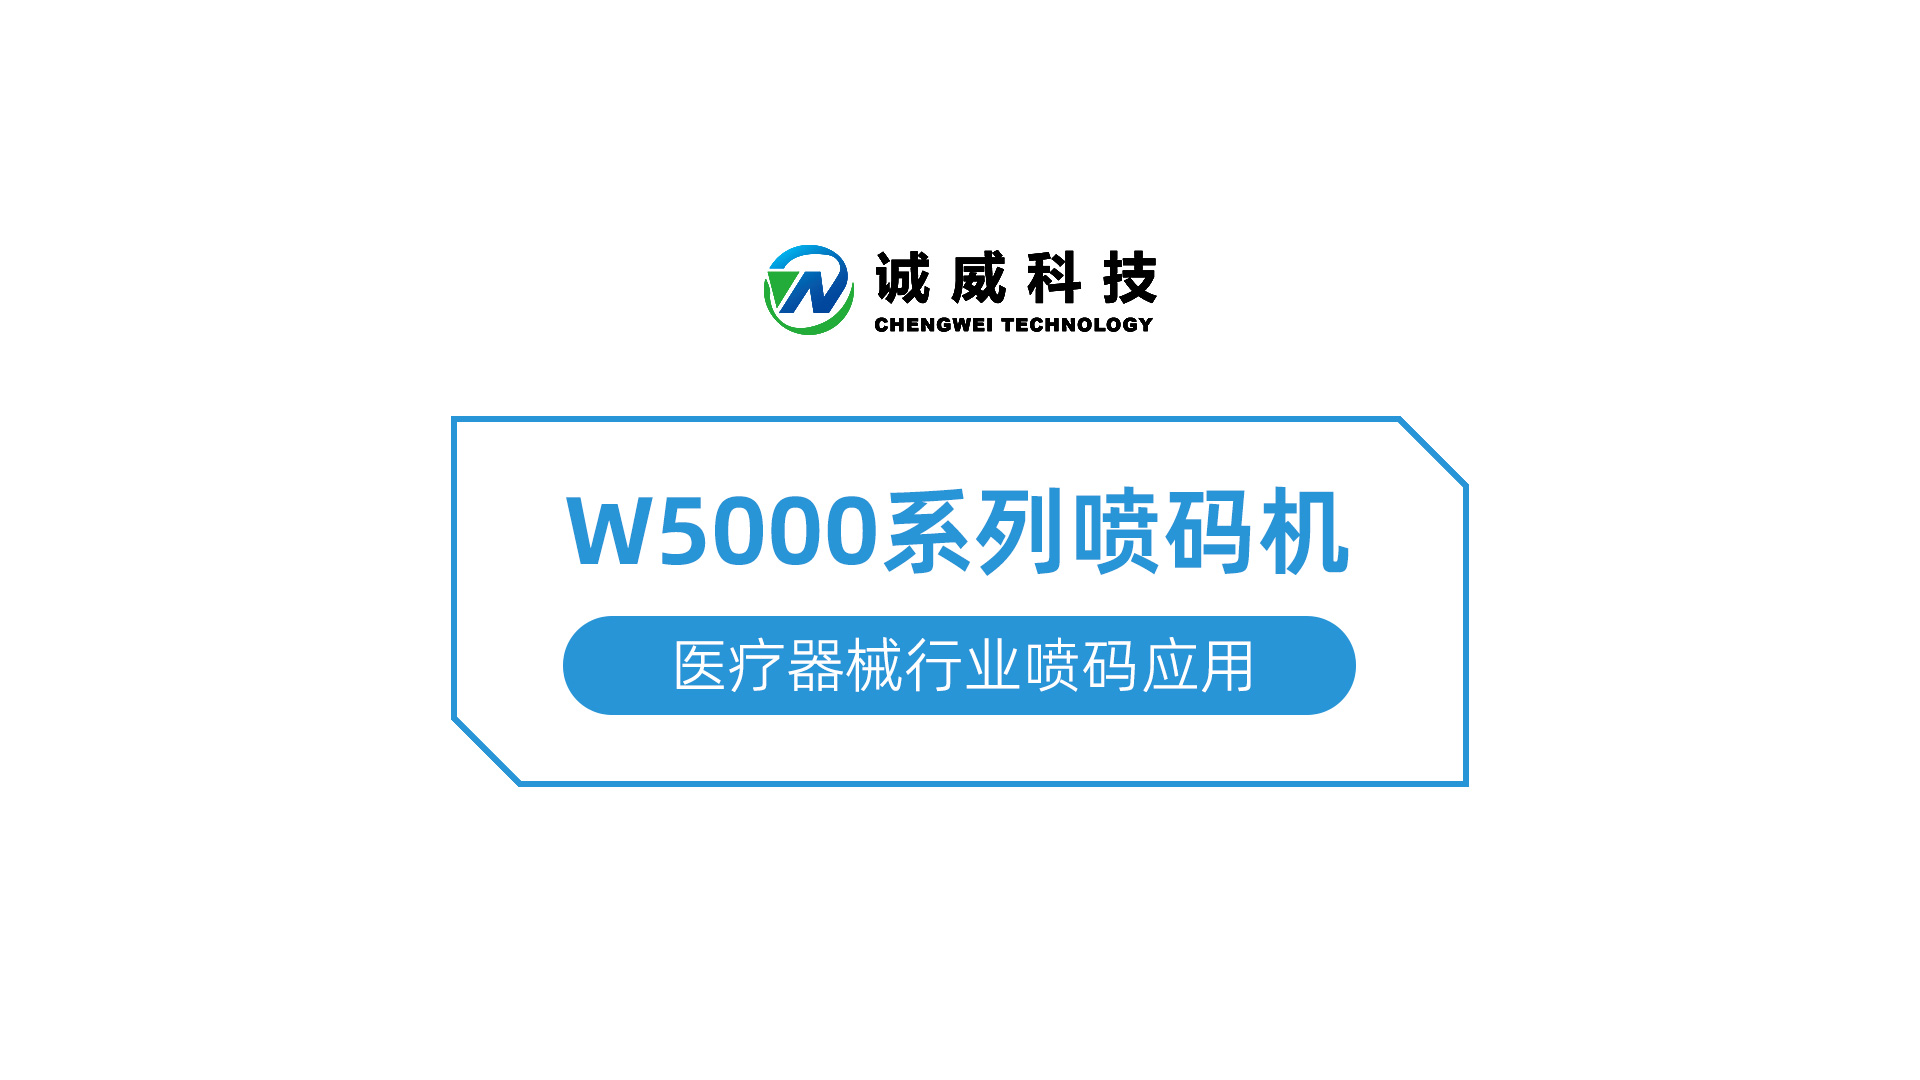 W5000系列喷码机-医疗器械行业喷码应用.jpg